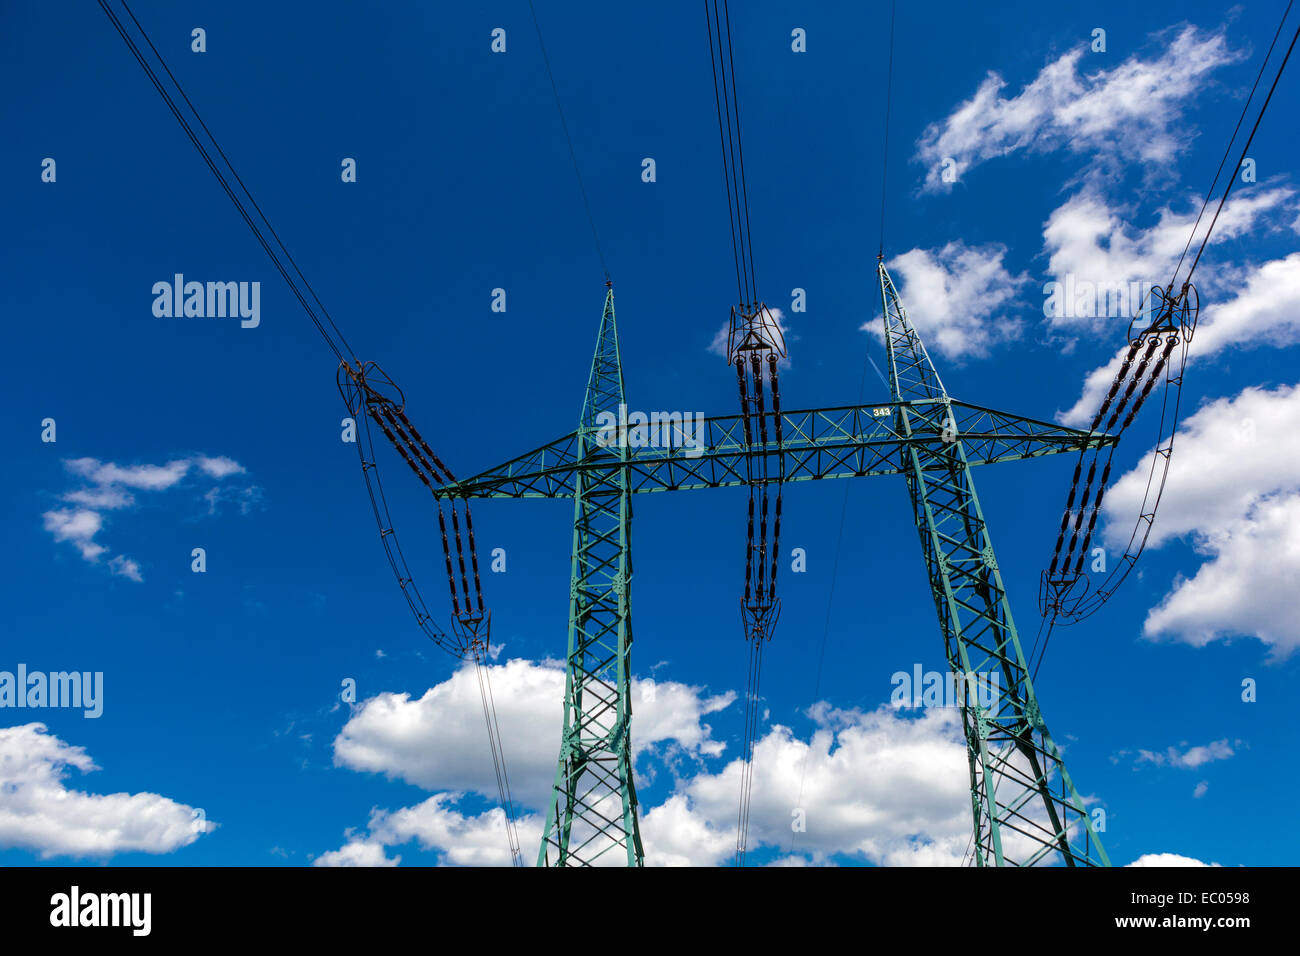 Líneas eléctricas pilón en cielo azul y fondo de nubes, mástil de alta tensión Foto de stock